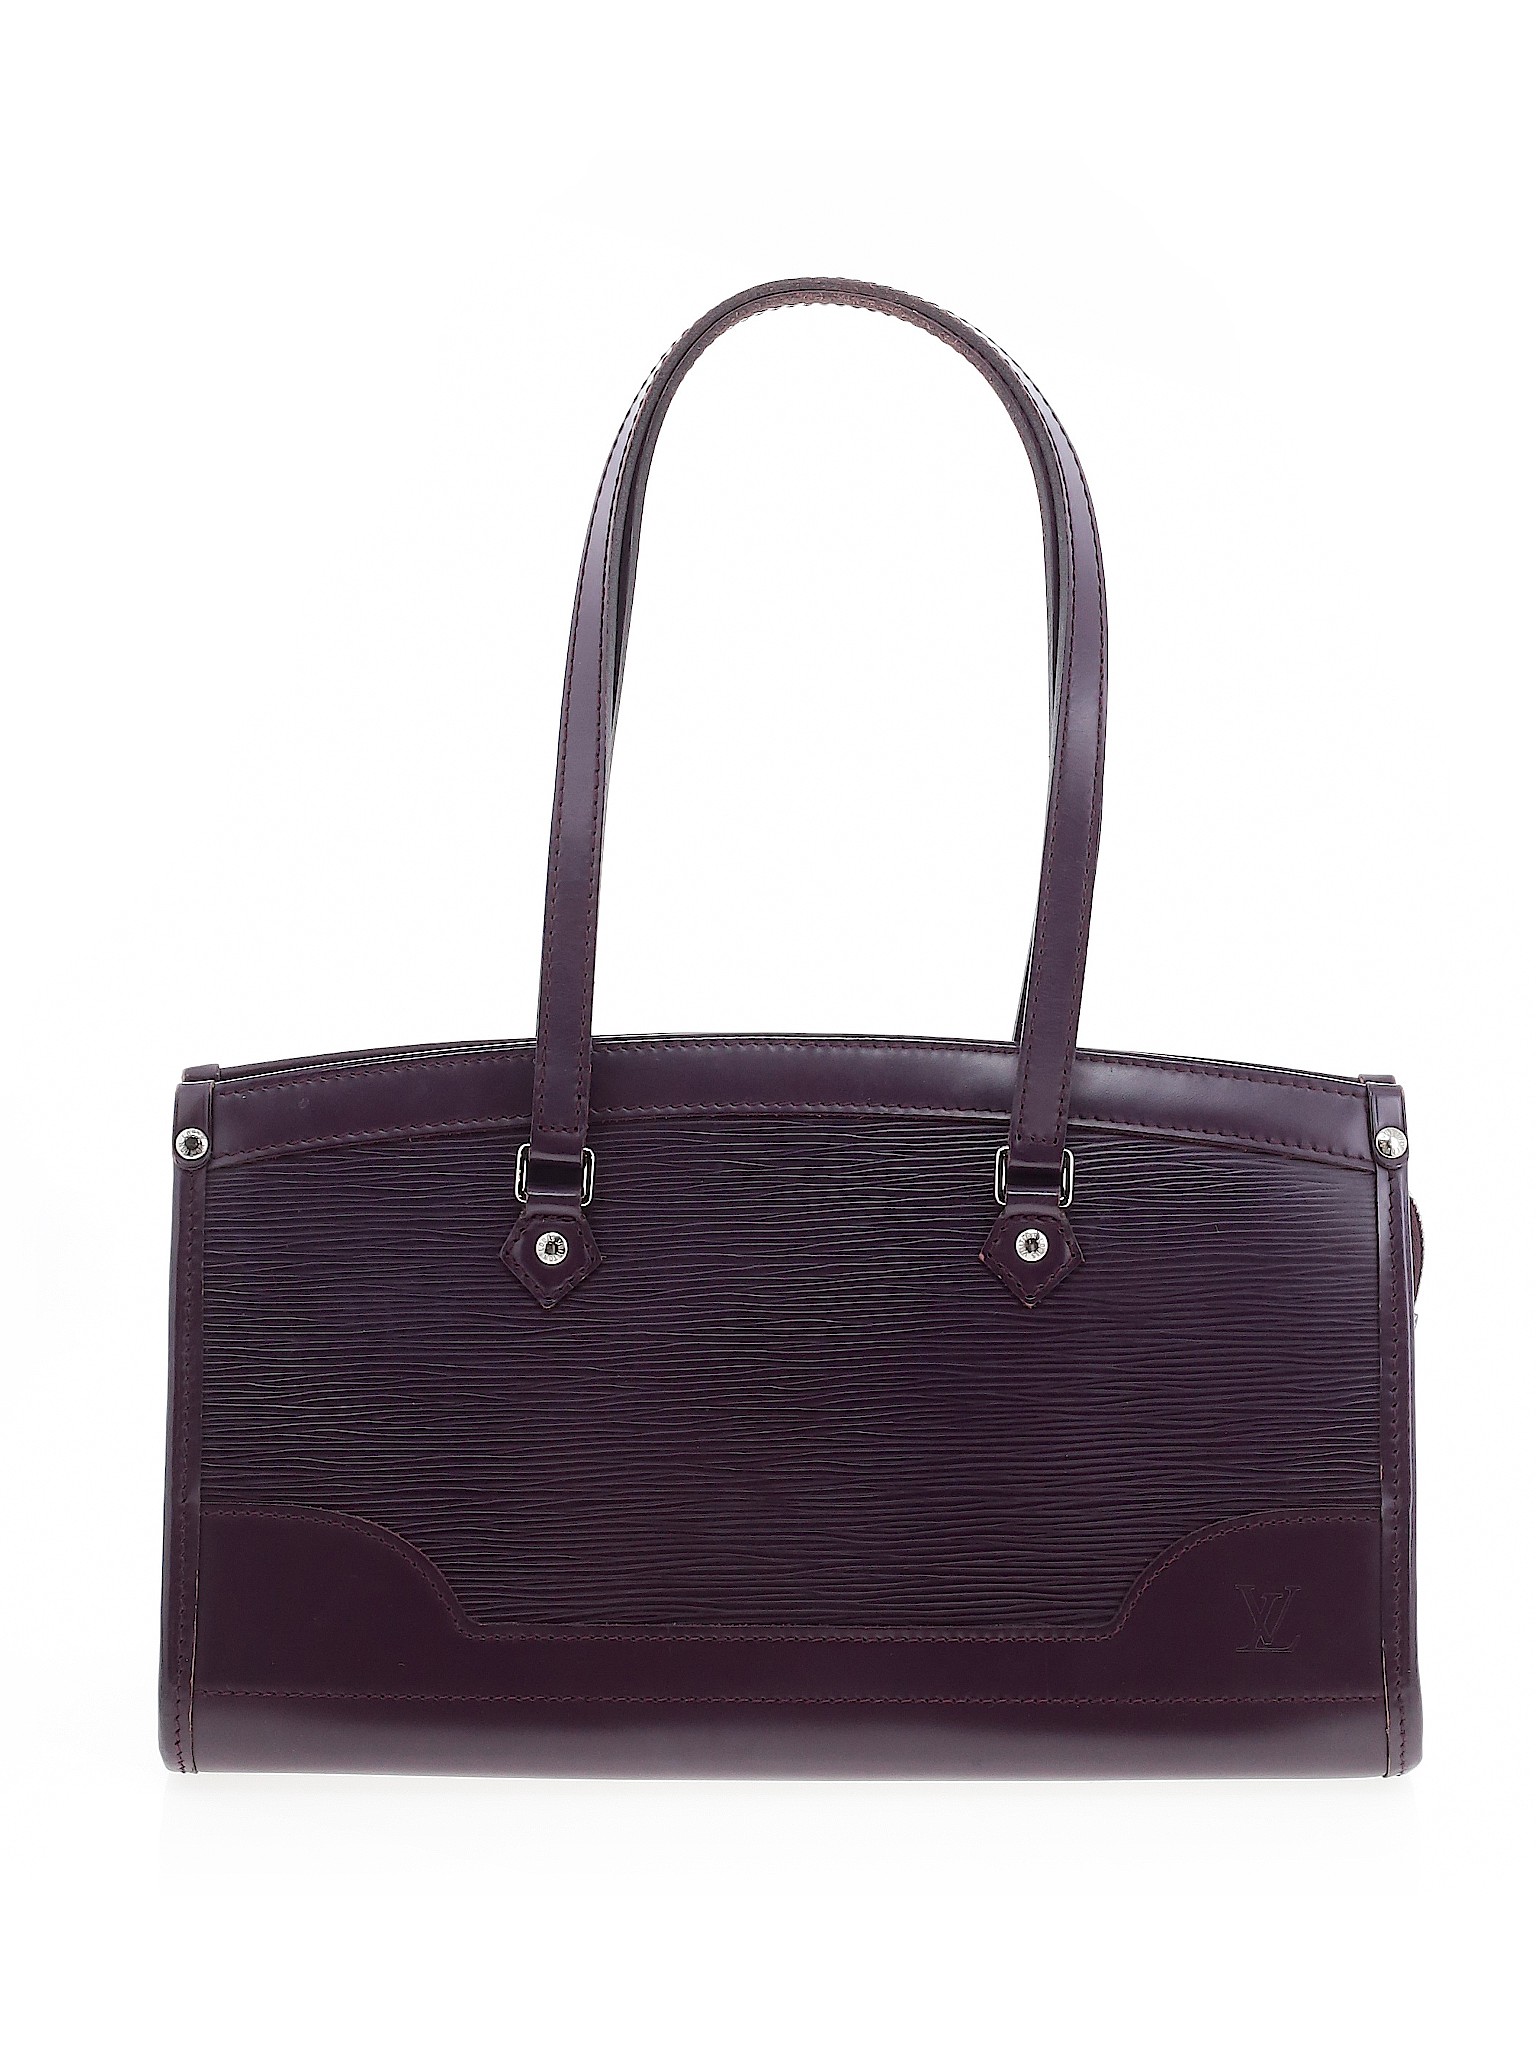 Louis Vuitton Women Purple Leather Shoulder Bag One Size | eBay